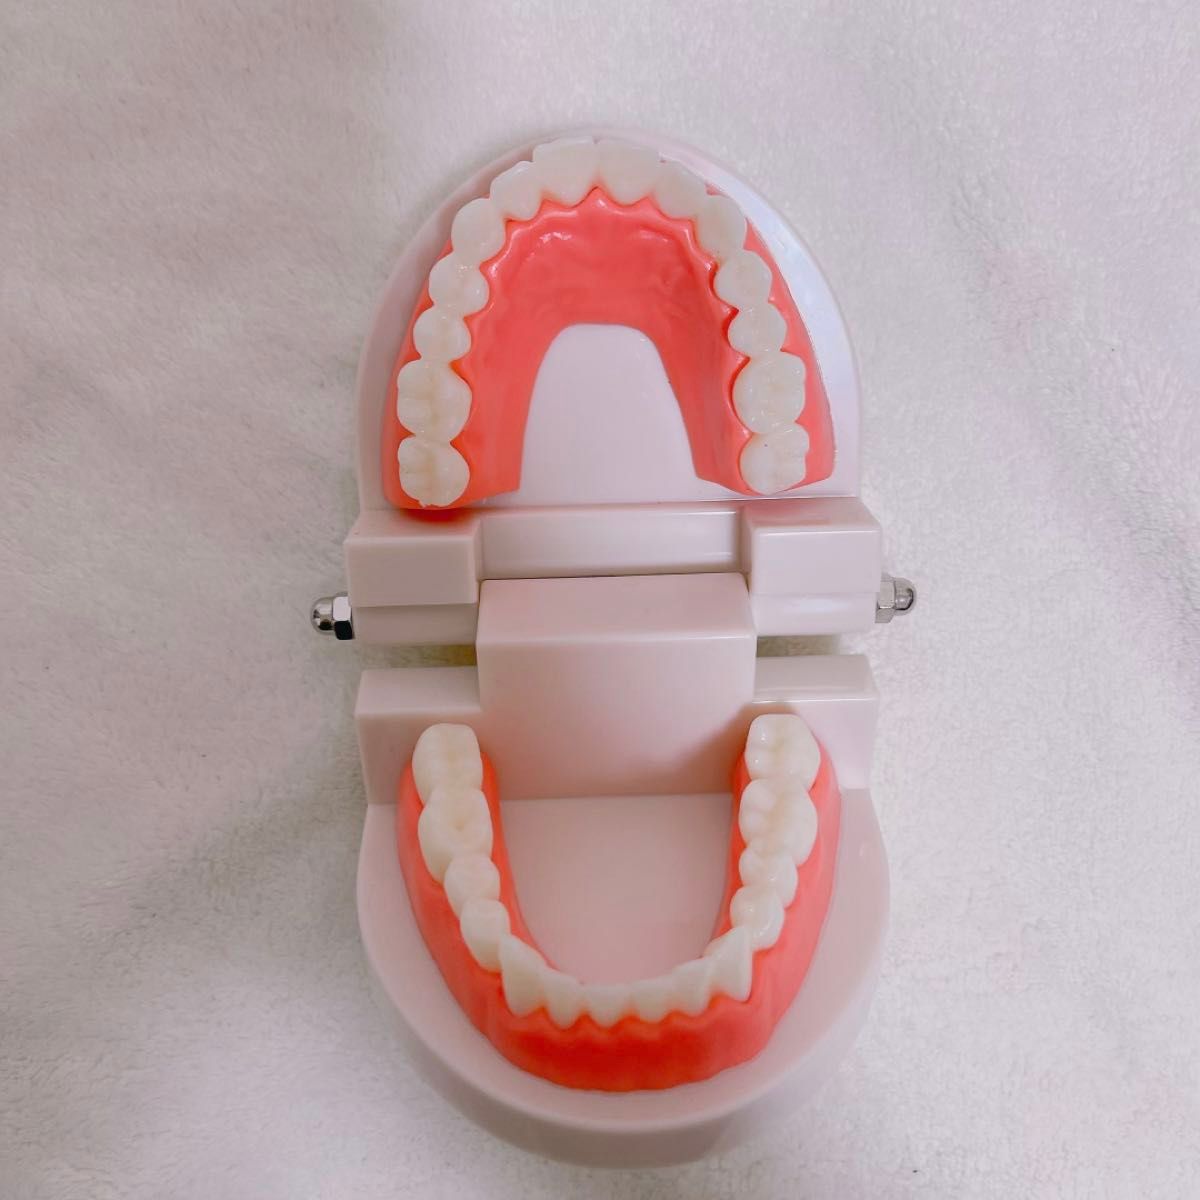 歯の模型 歯磨き 歯医者 歯磨き練習 知育玩具 知育 180度開閉 子供 キッズ 学校 幼稚園 保育園 ごっこ遊び 歯科衛生士